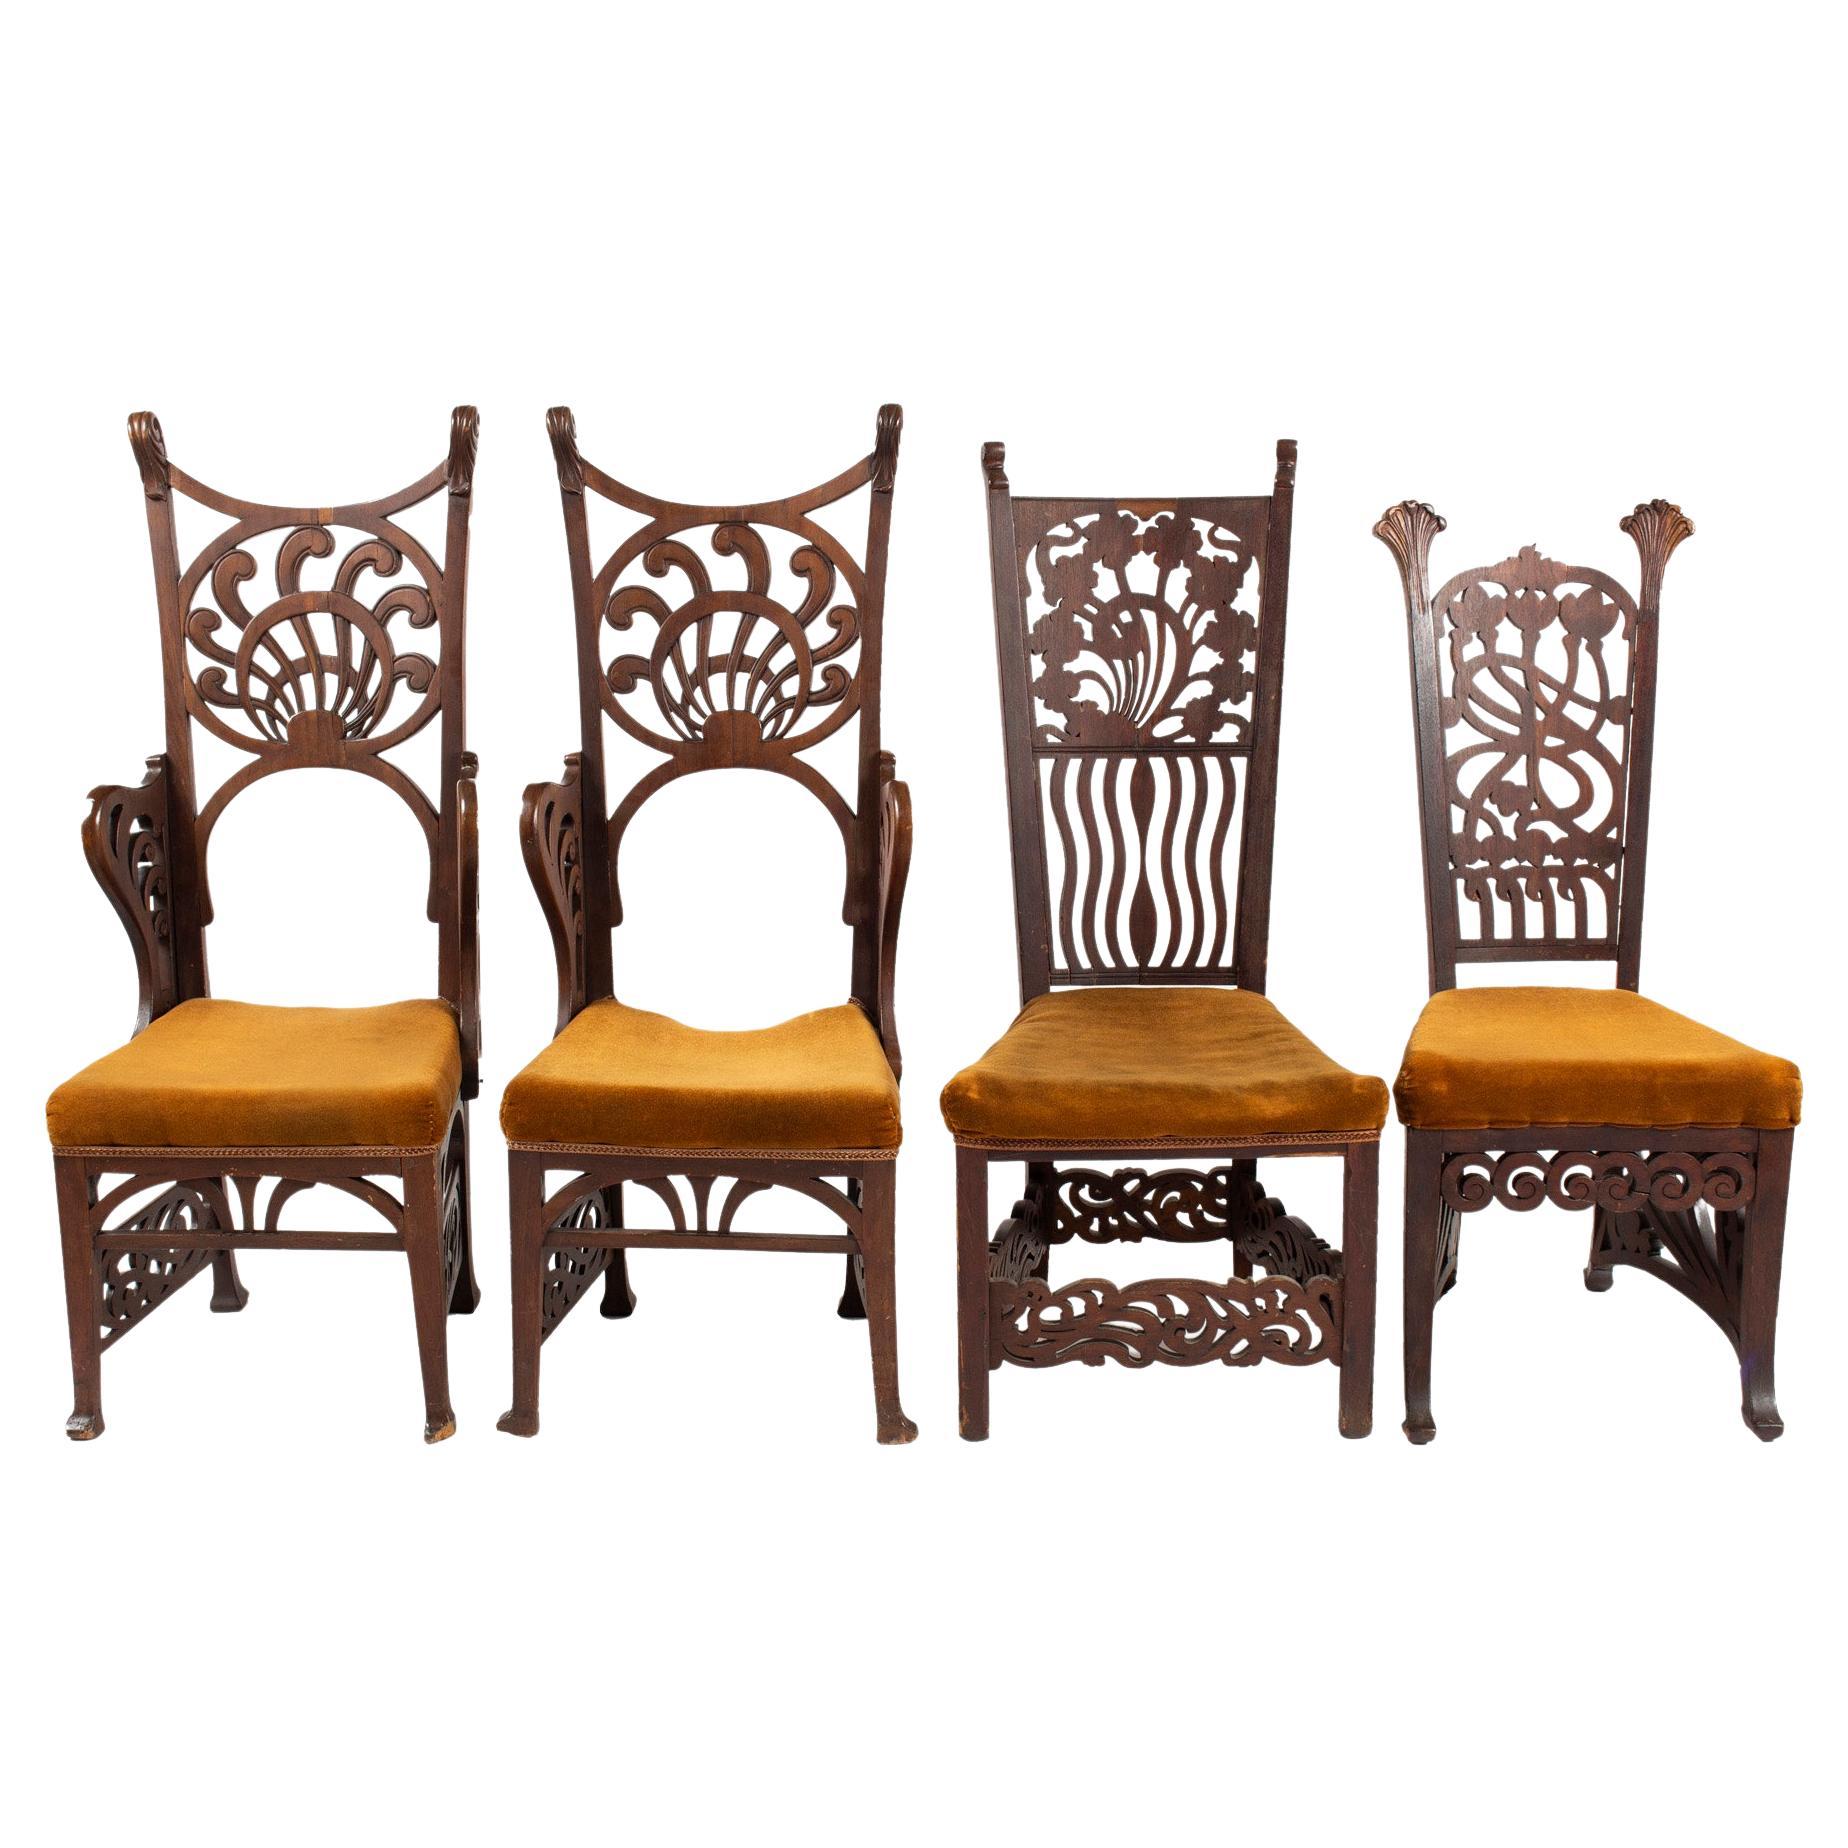 Unique Rippl-Rónai József Art Nouveau Chairs, circa 1900s